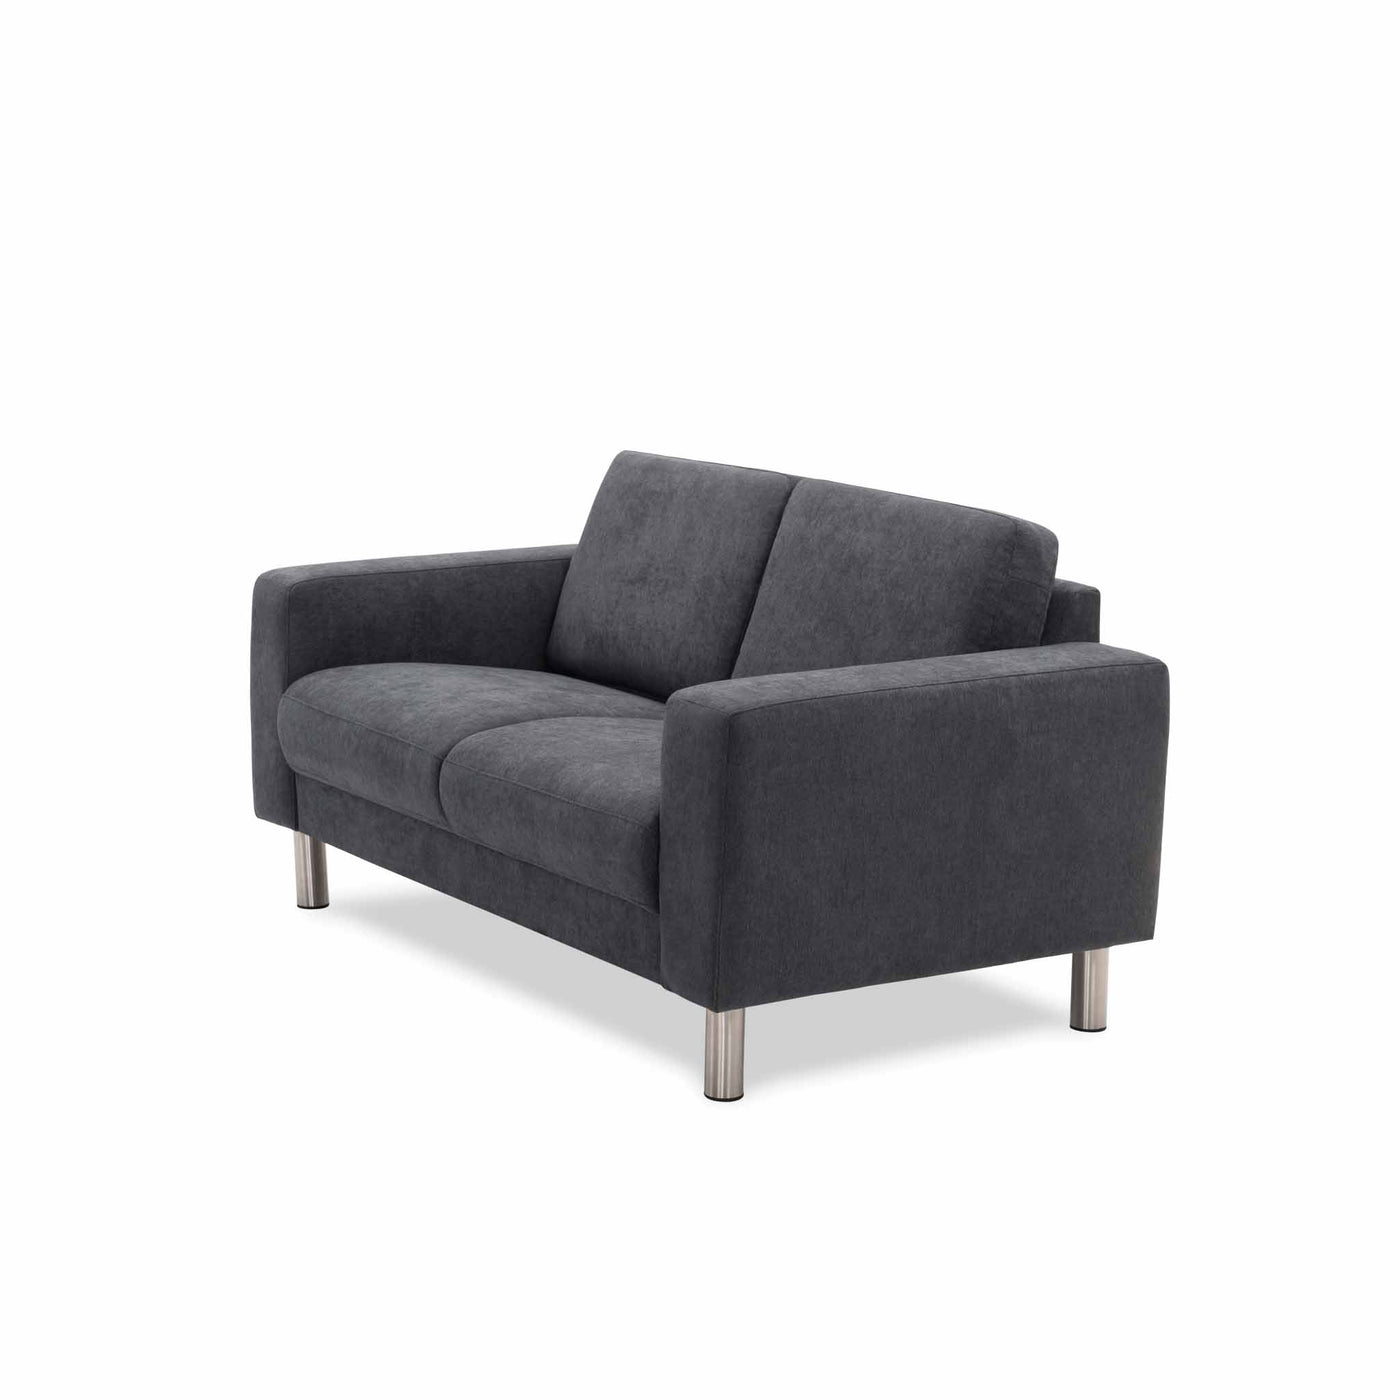 City 2-personers sofa i mørkegrå stof fra Hjort Knudsen